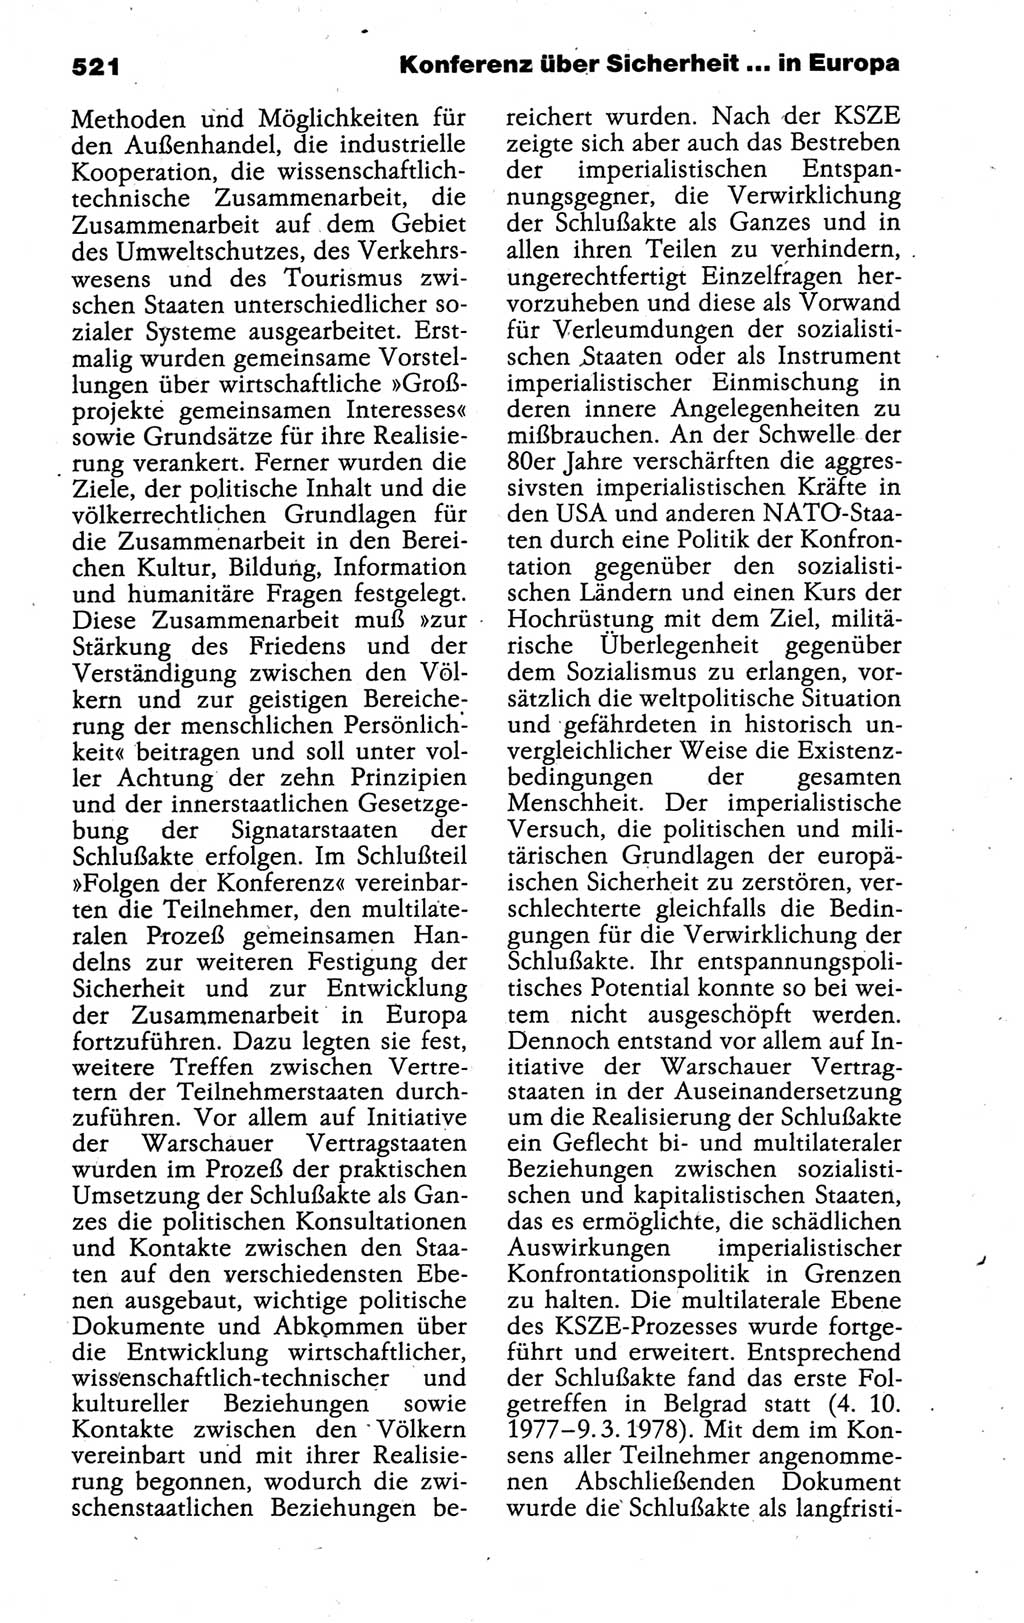 Kleines politisches Wörterbuch [Deutsche Demokratische Republik (DDR)] 1988, Seite 521 (Kl. pol. Wb. DDR 1988, S. 521)